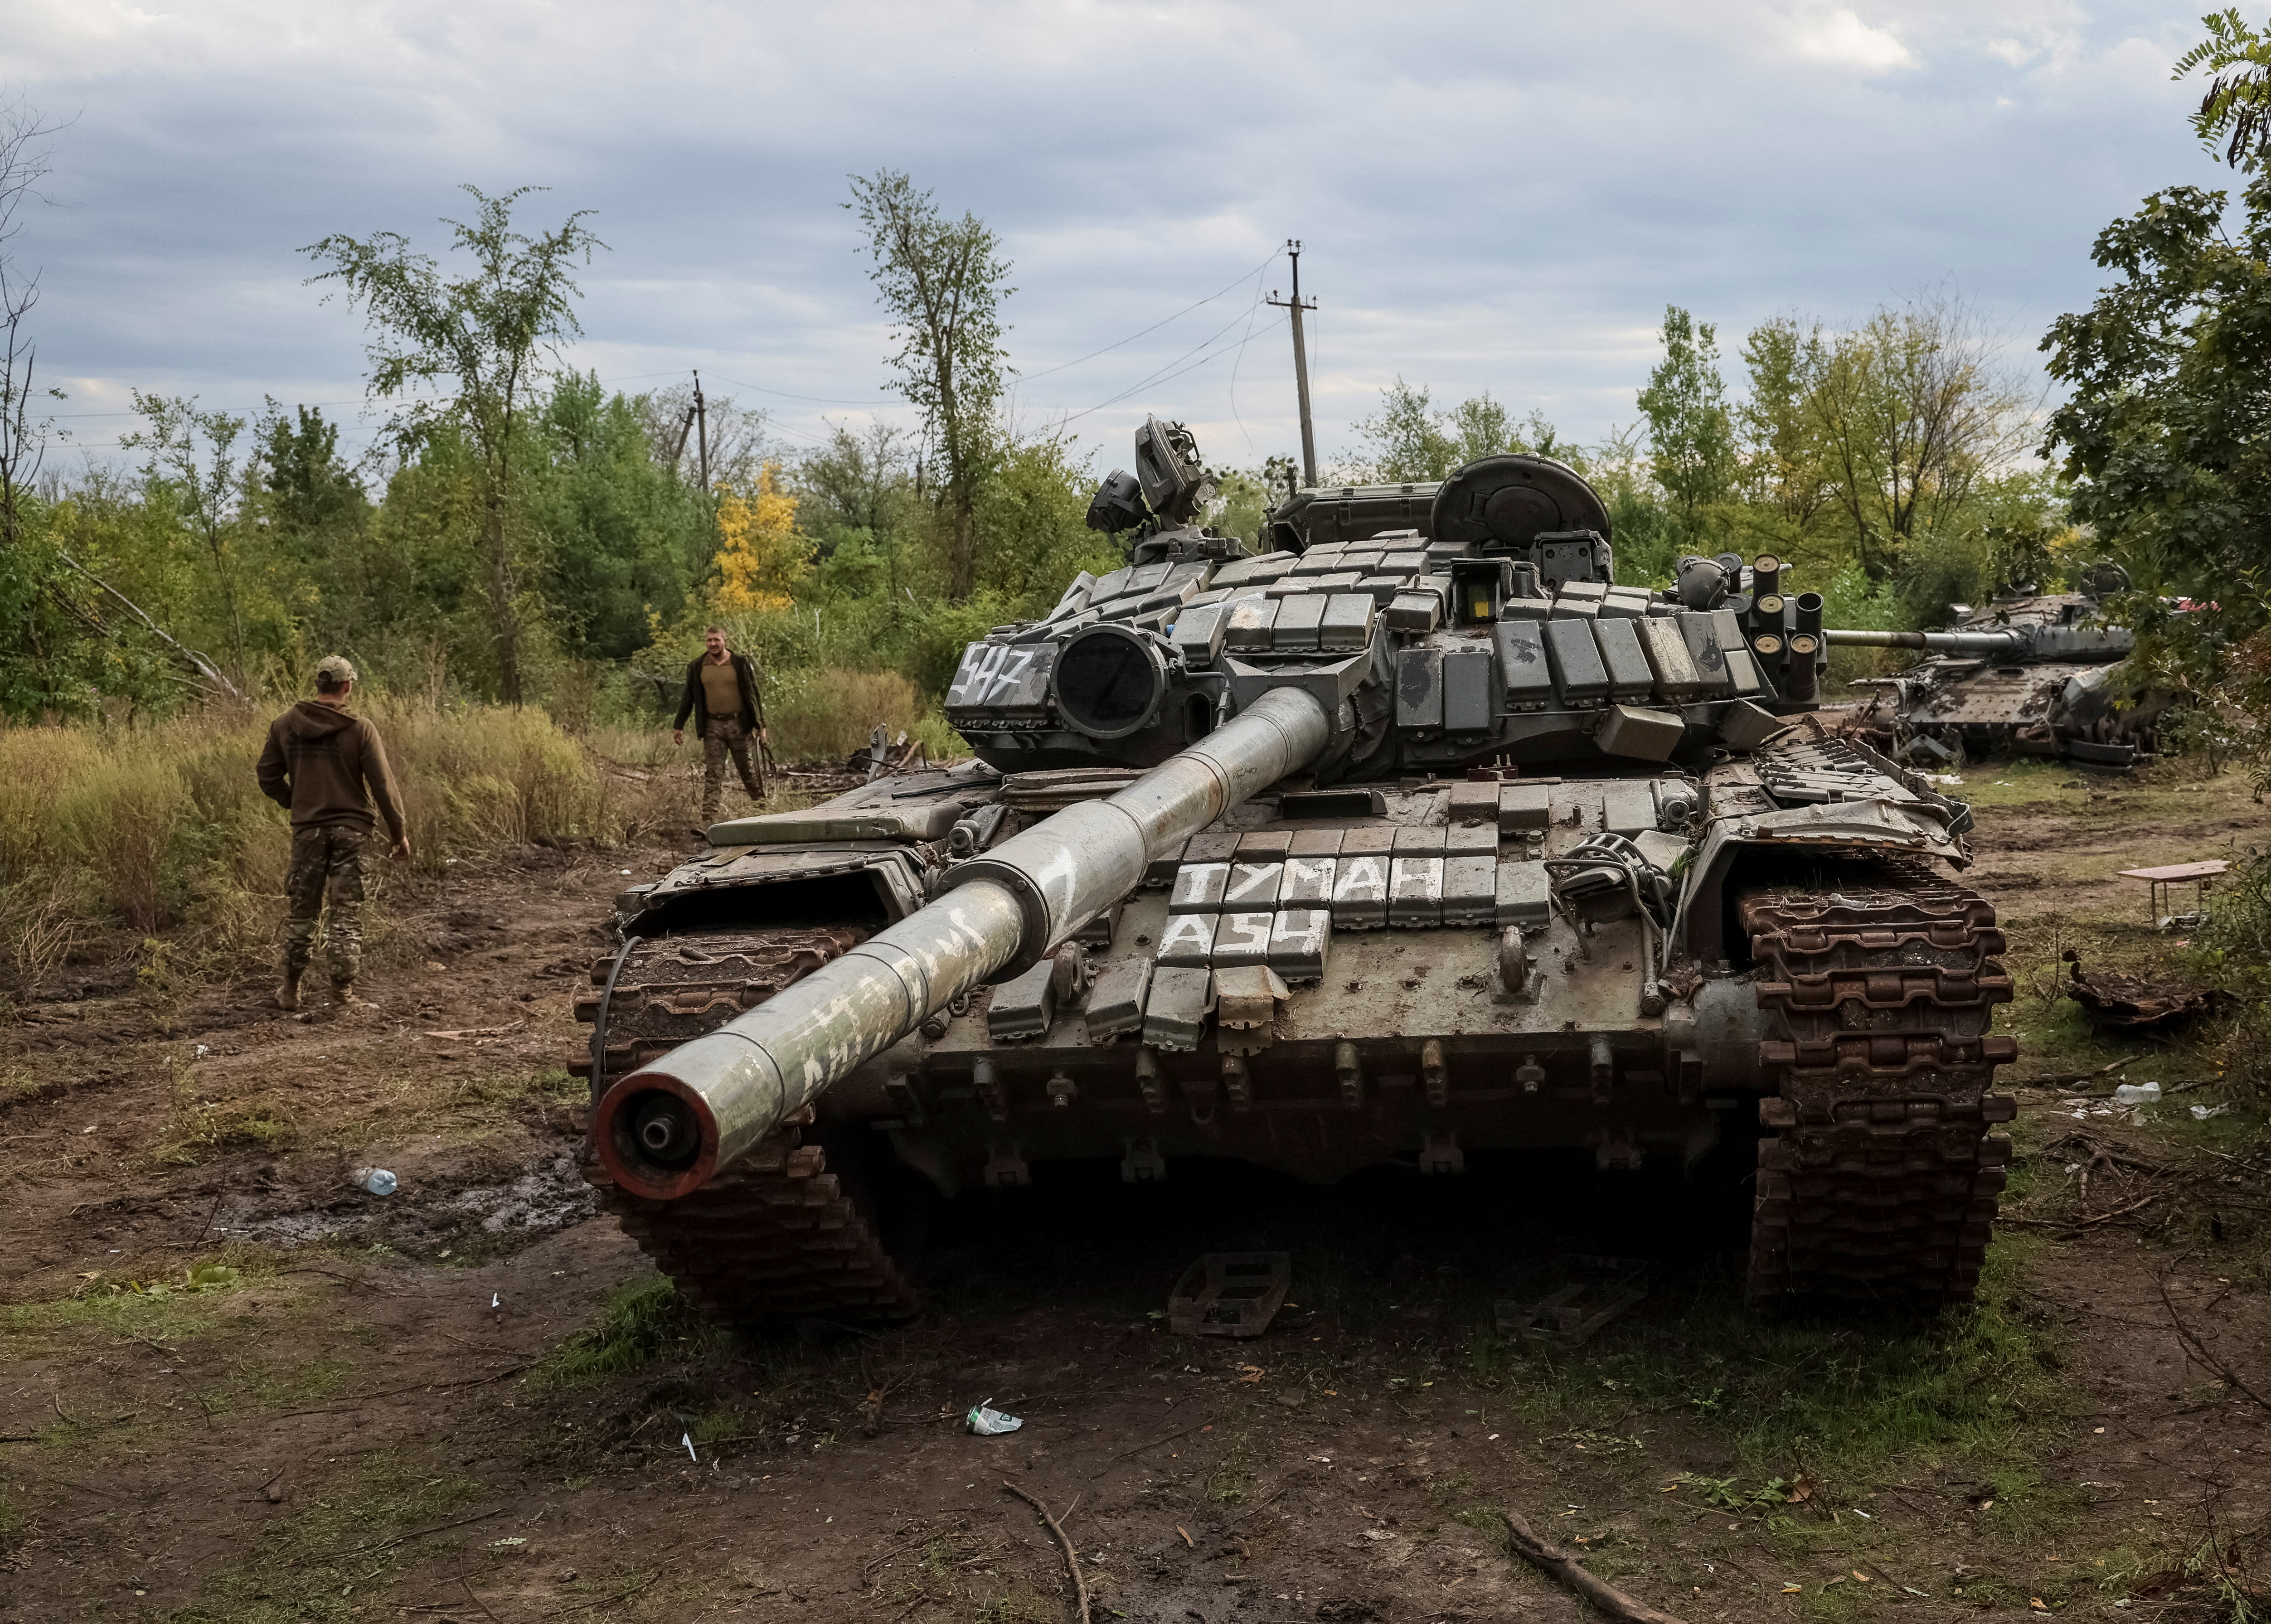 Ukraine và Nga đang trong cuộc chiến tranh và xe tăng chính là vũ khí chủ đạo. Xem ngay hình ảnh liên quan để tìm hiểu về các loại xe tăng và cách thức chiến đấu của hai bên.